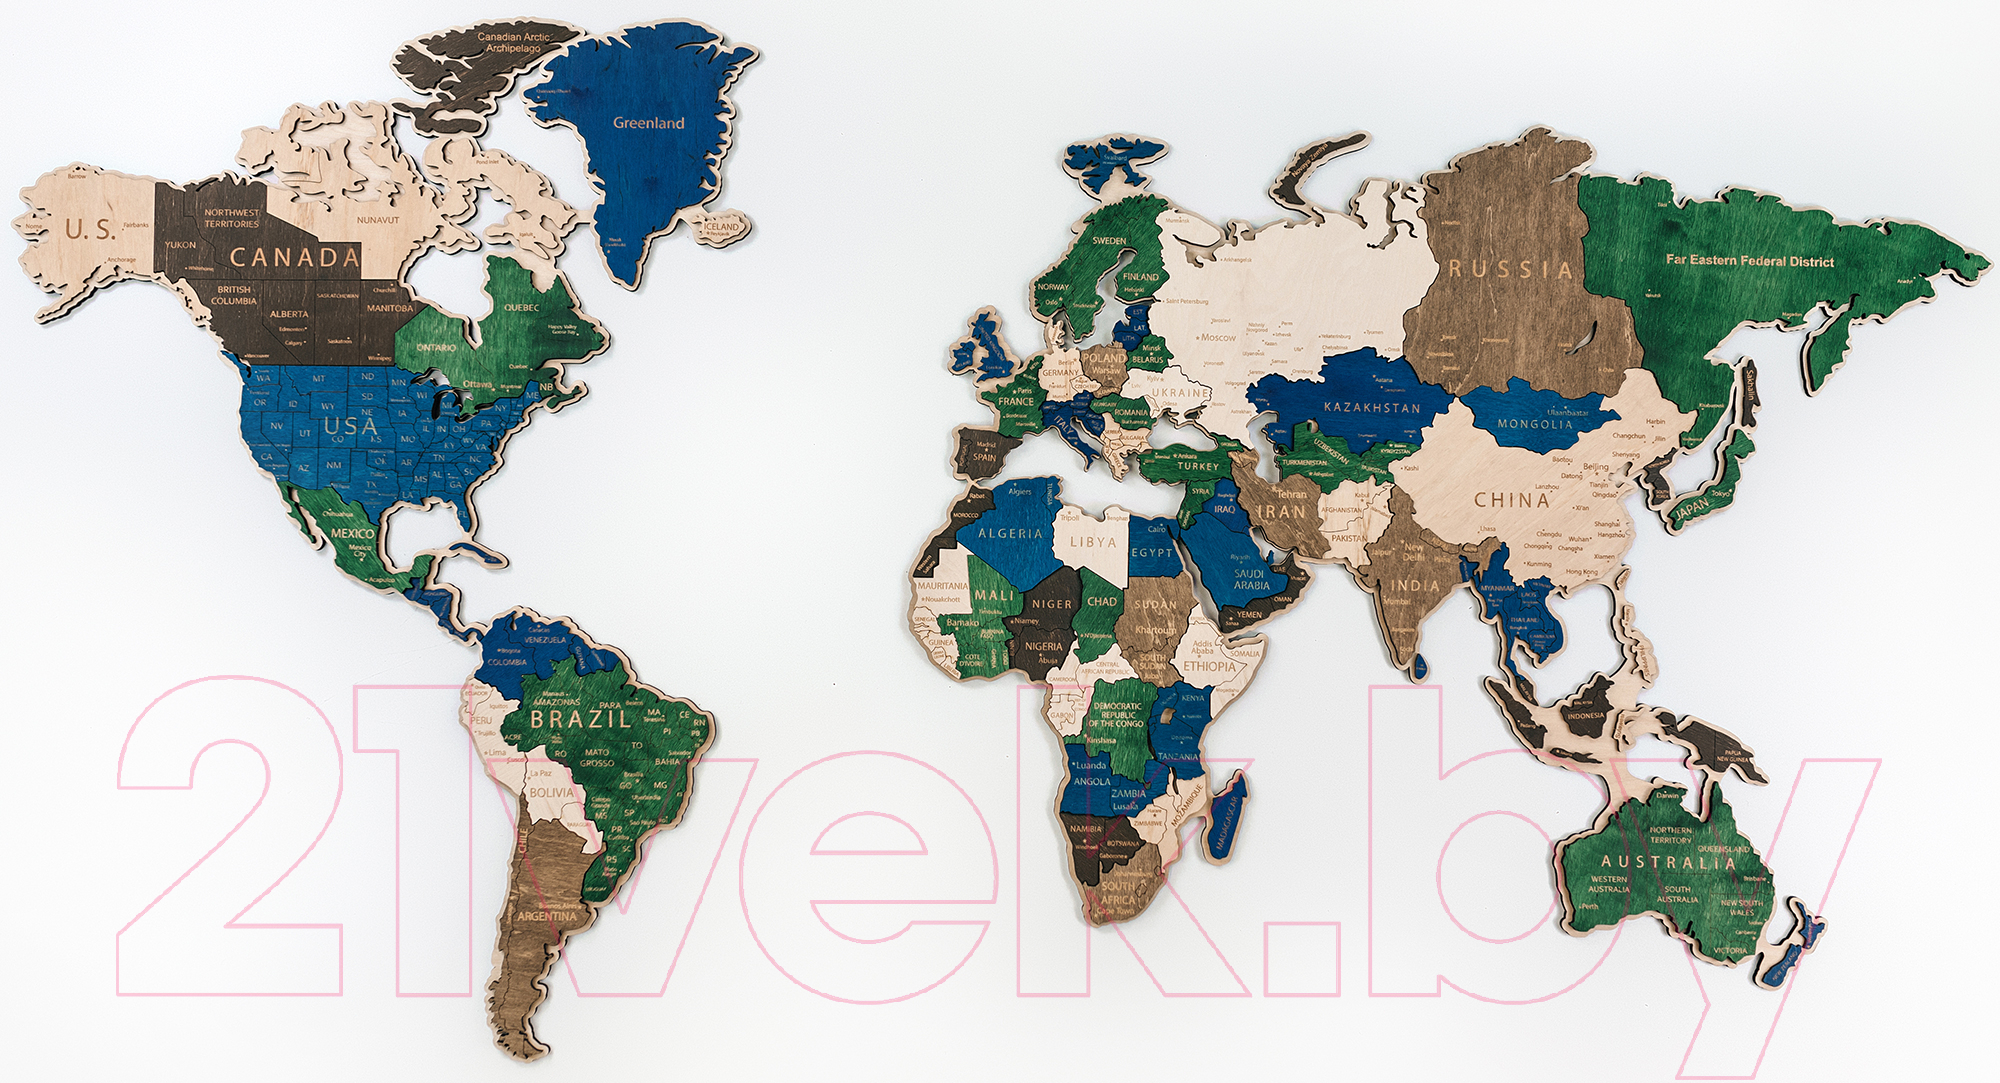 Декор настенный Woodary Карта мира на английском языке XL / 3191